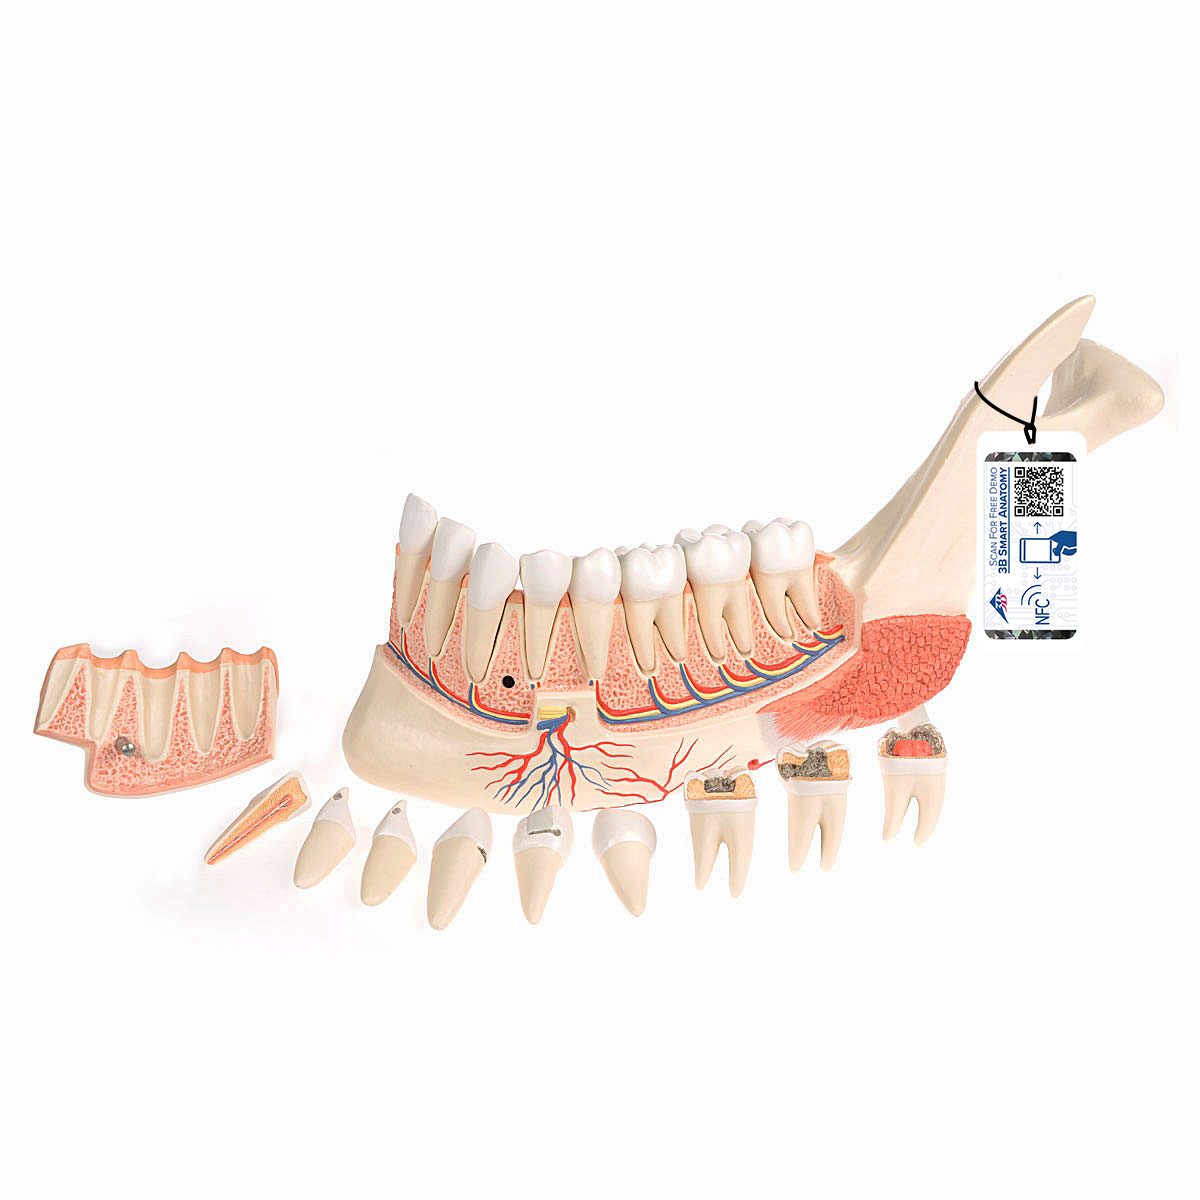 Unterkieferhälfte Modell mit 8 kariösen Zähnen, 19-teilig - 3B Smart Anatomy, Bestellnummer 1001250, VE290, 3B Scientific